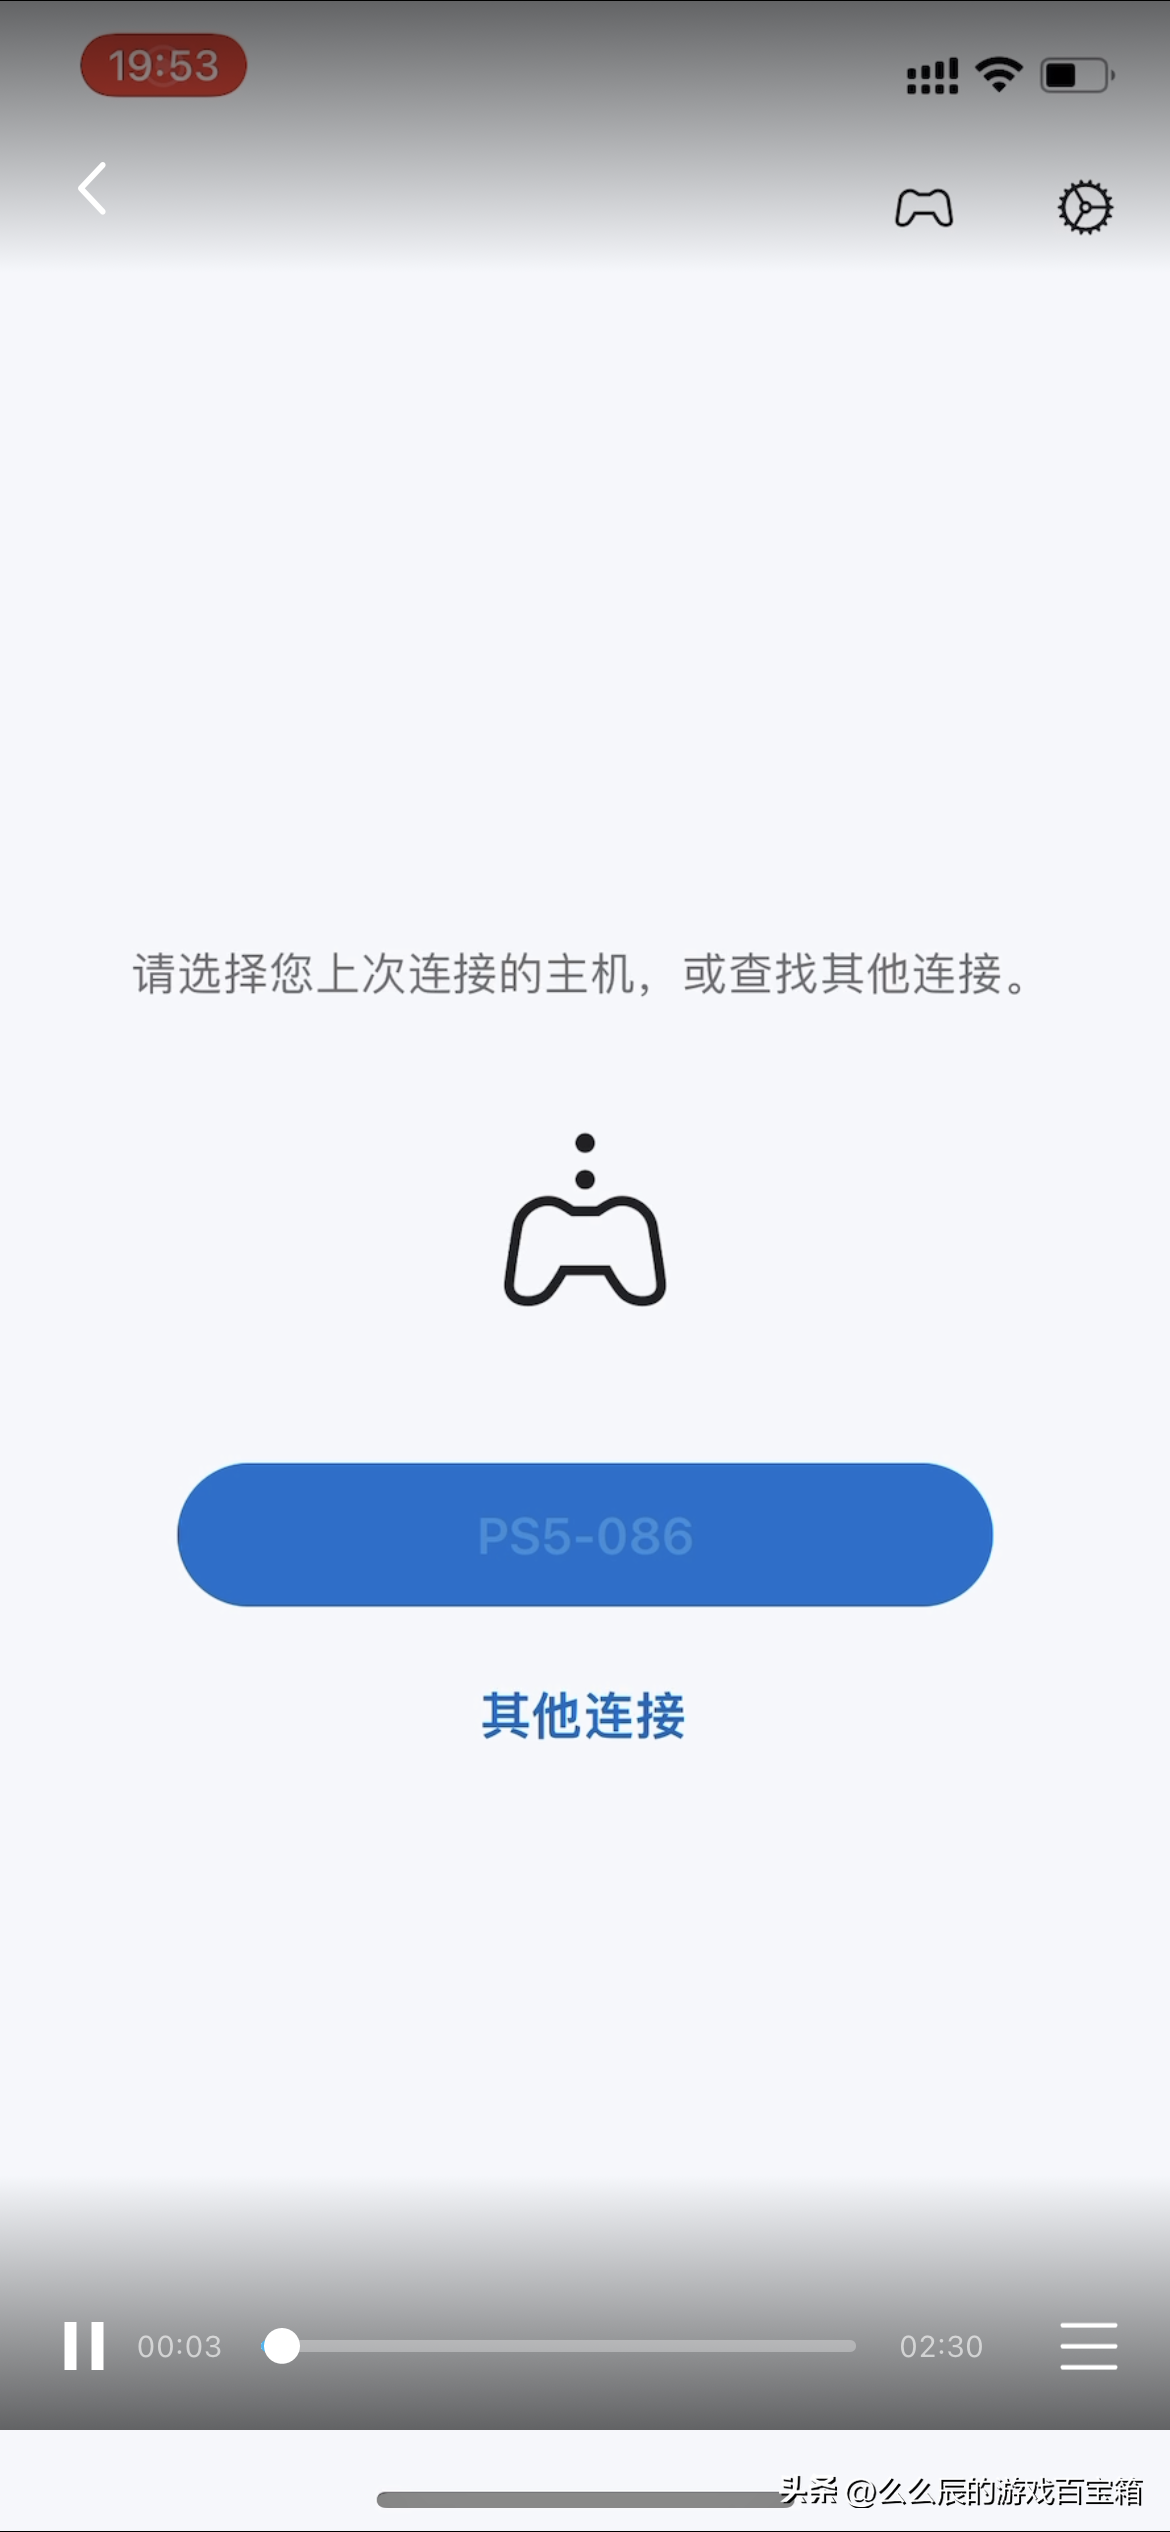 谷歌账号创建电话号码无法用于验证_谷歌账号中国手机号无法验证_注册谷歌账号手机无法验证